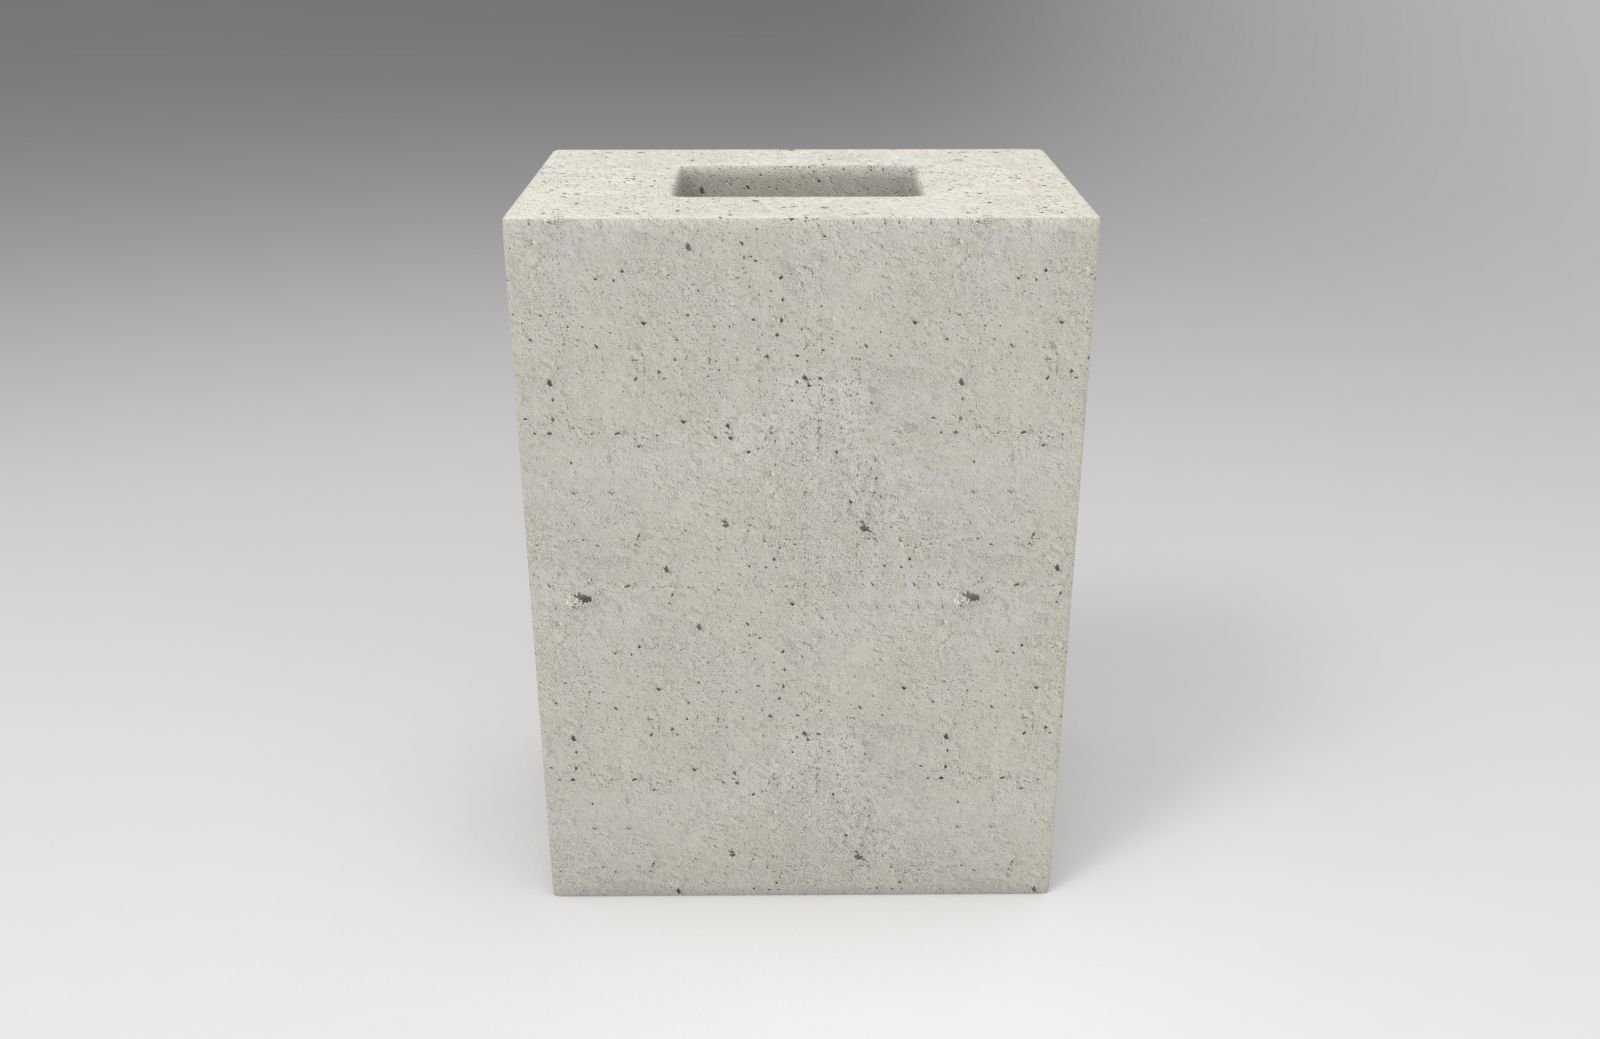 compensador-concreto-vedacao-aparente-1-4-14x19x9cm-classe-c-lateral